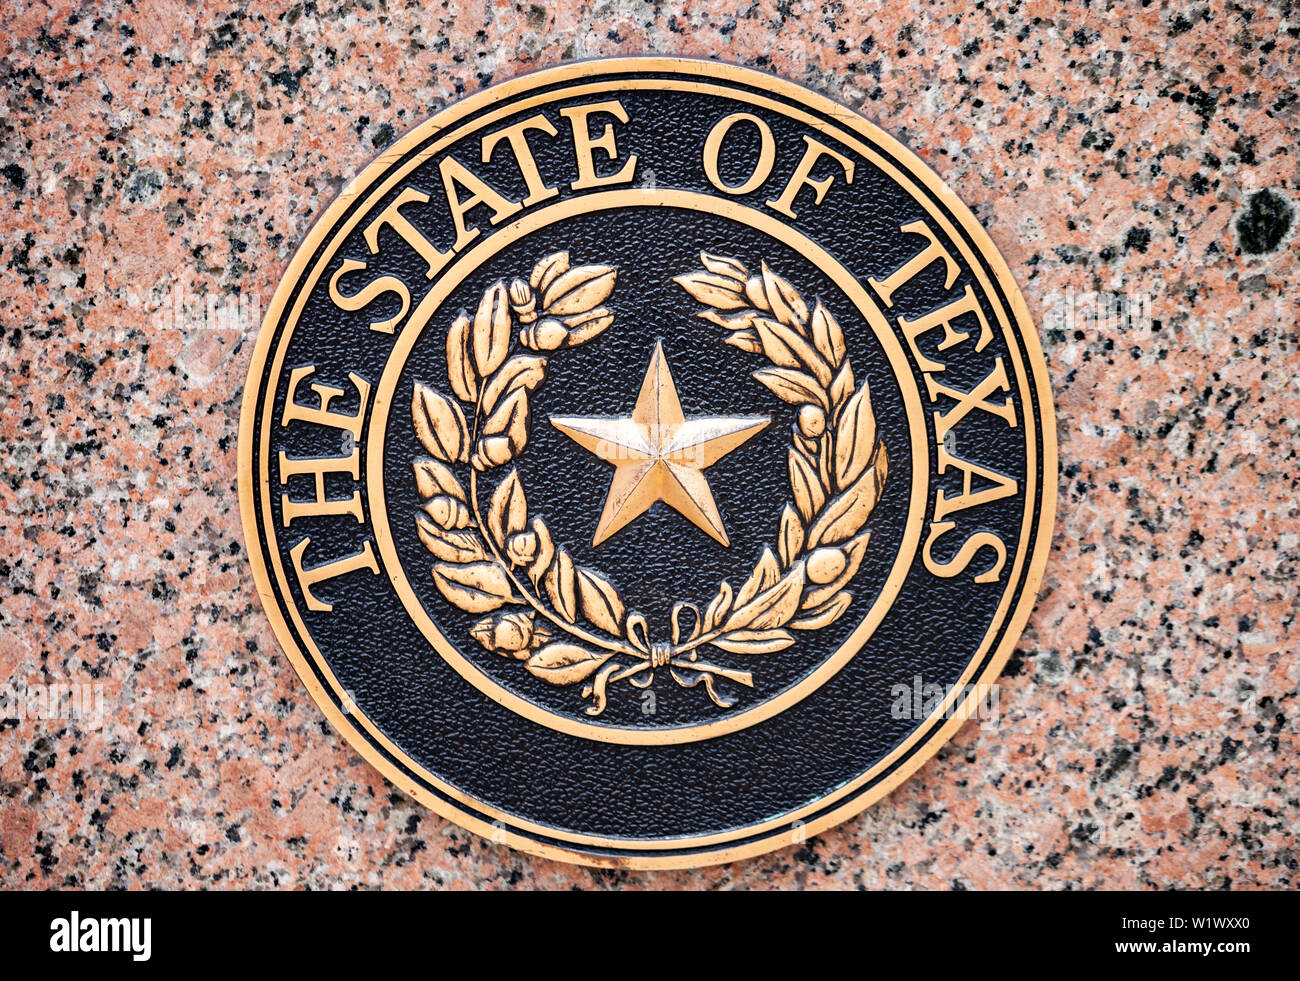 AUSTIN, Texas - luglio 2, 2019 - il sigillo ufficiale dello Stato del Texas montato sulla parete di granito Foto Stock